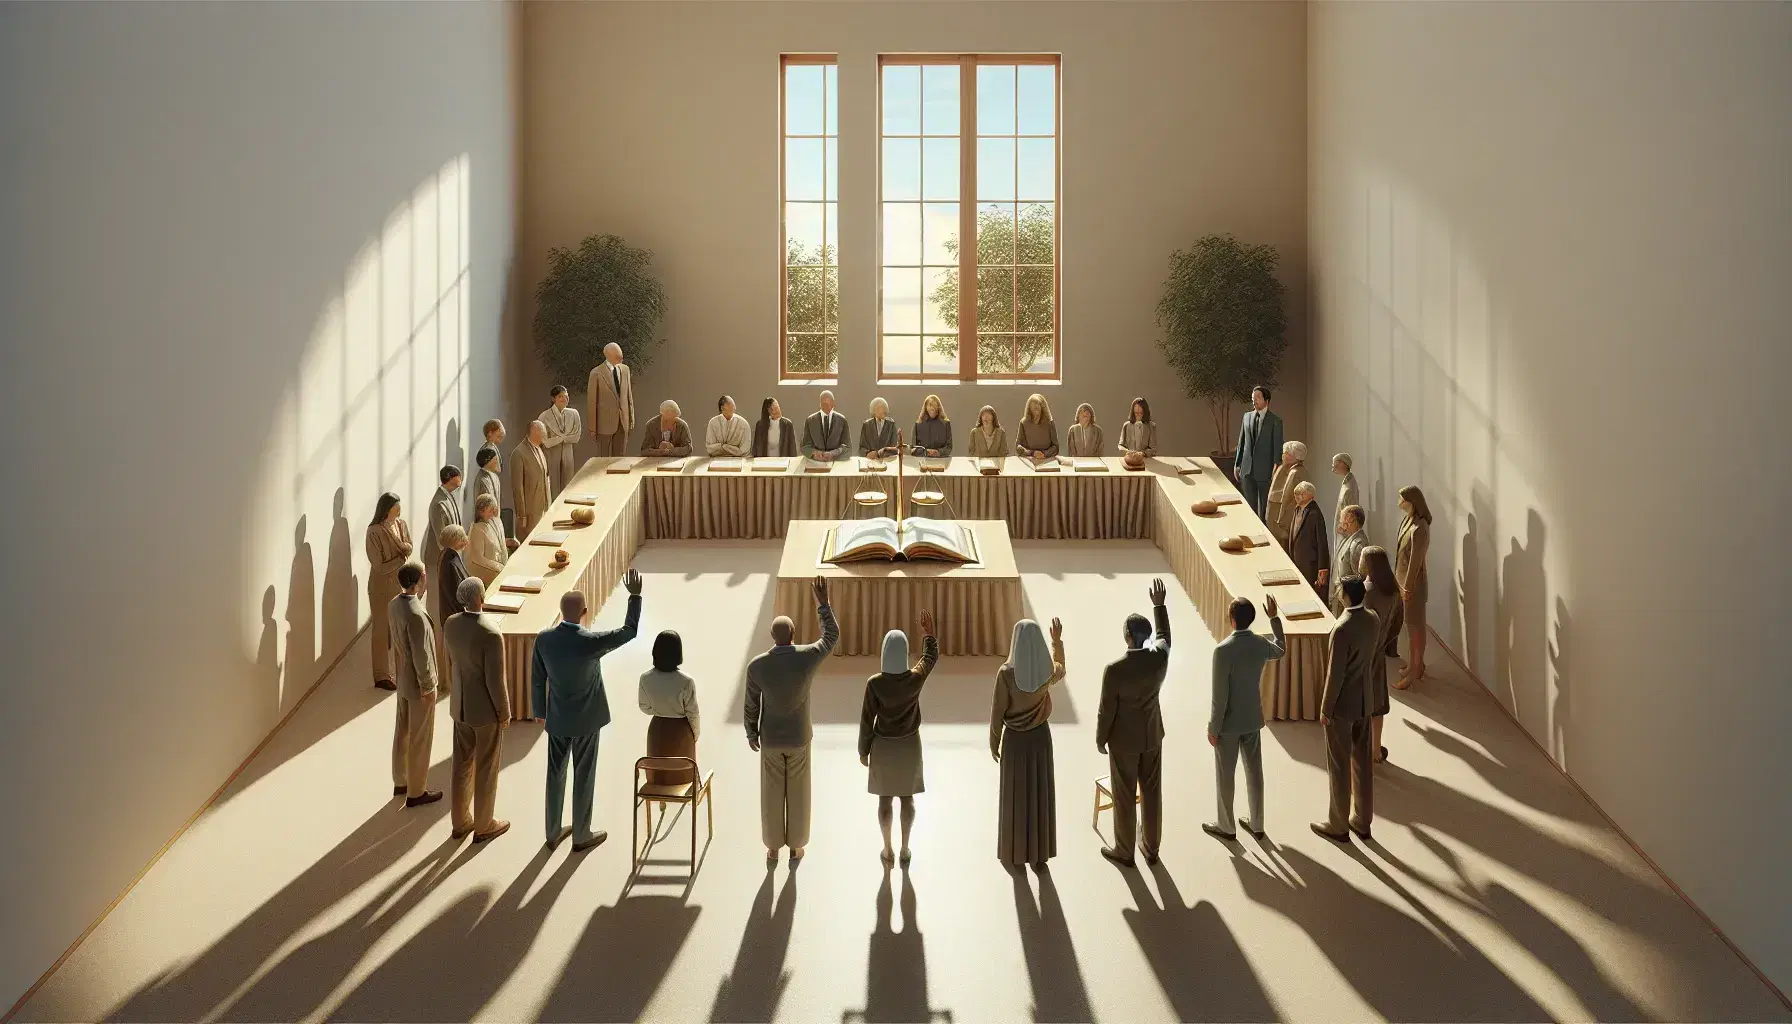 Grupo diverso en reunión alrededor de una mesa con libro abierto, ventana al fondo y balanza de justicia en primer plano.